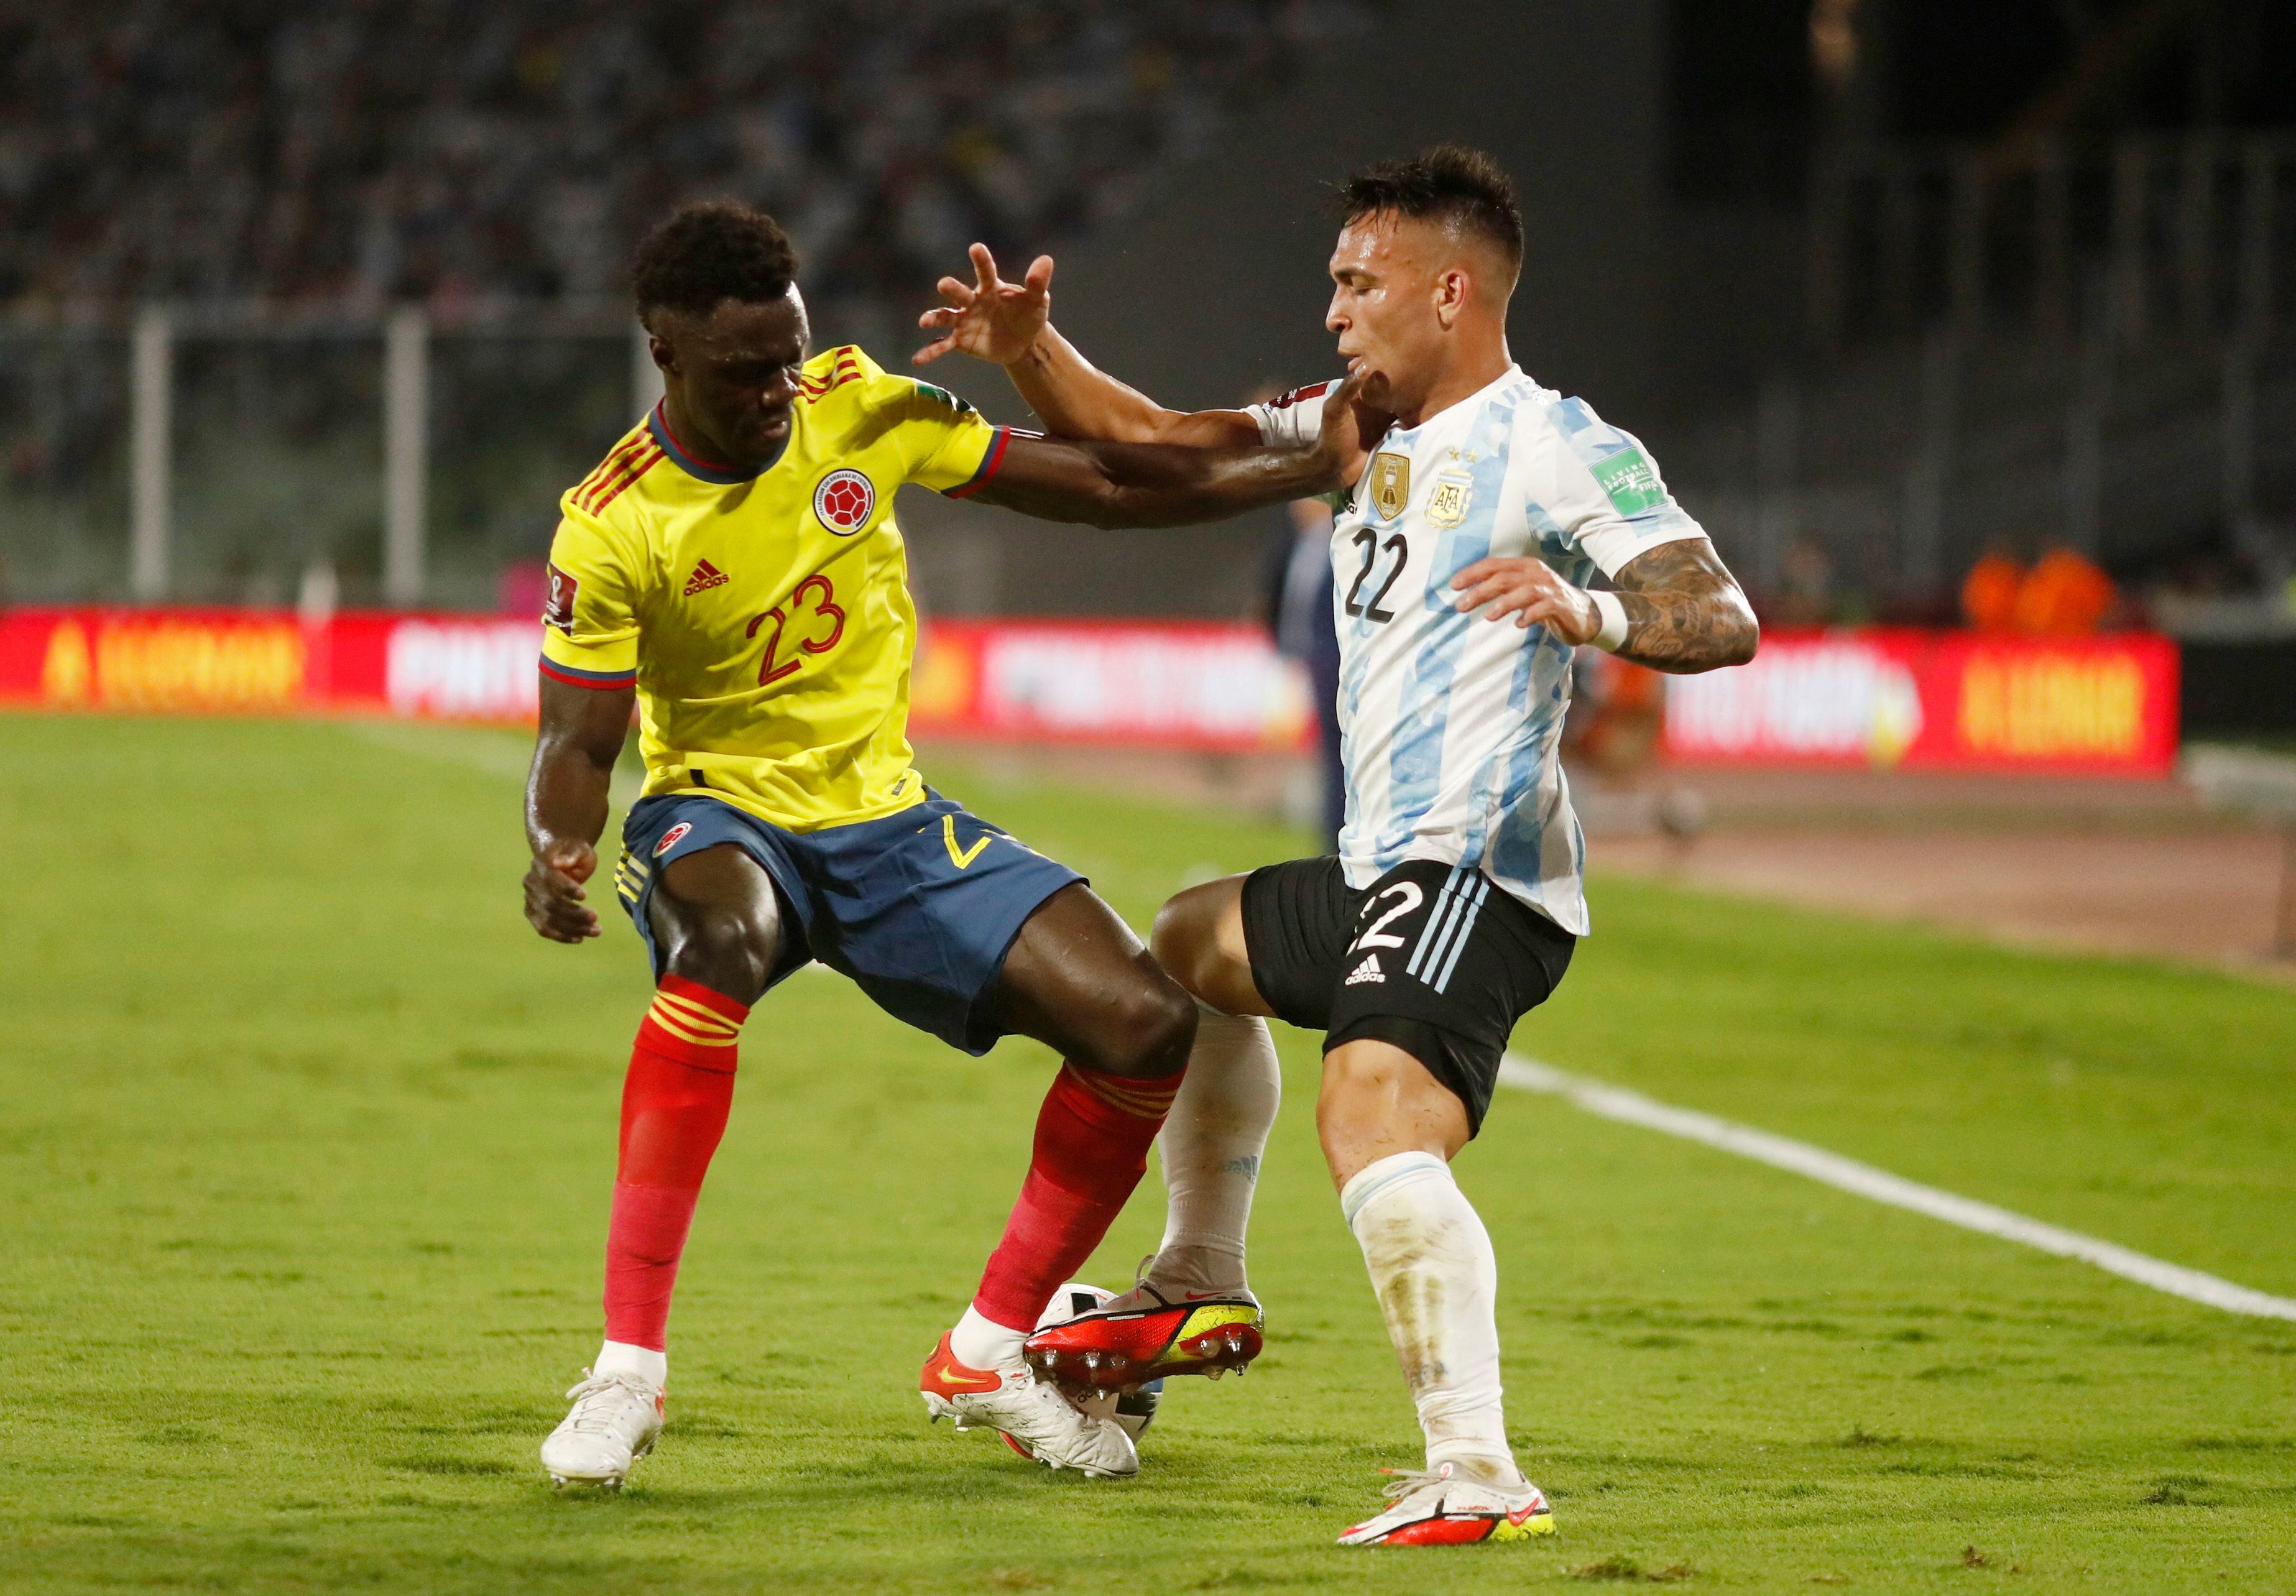 El defensor colombiano habló sobre el futuro del equipo nacional para el futuro. Foto: REUTERS/Agustin Marcarian